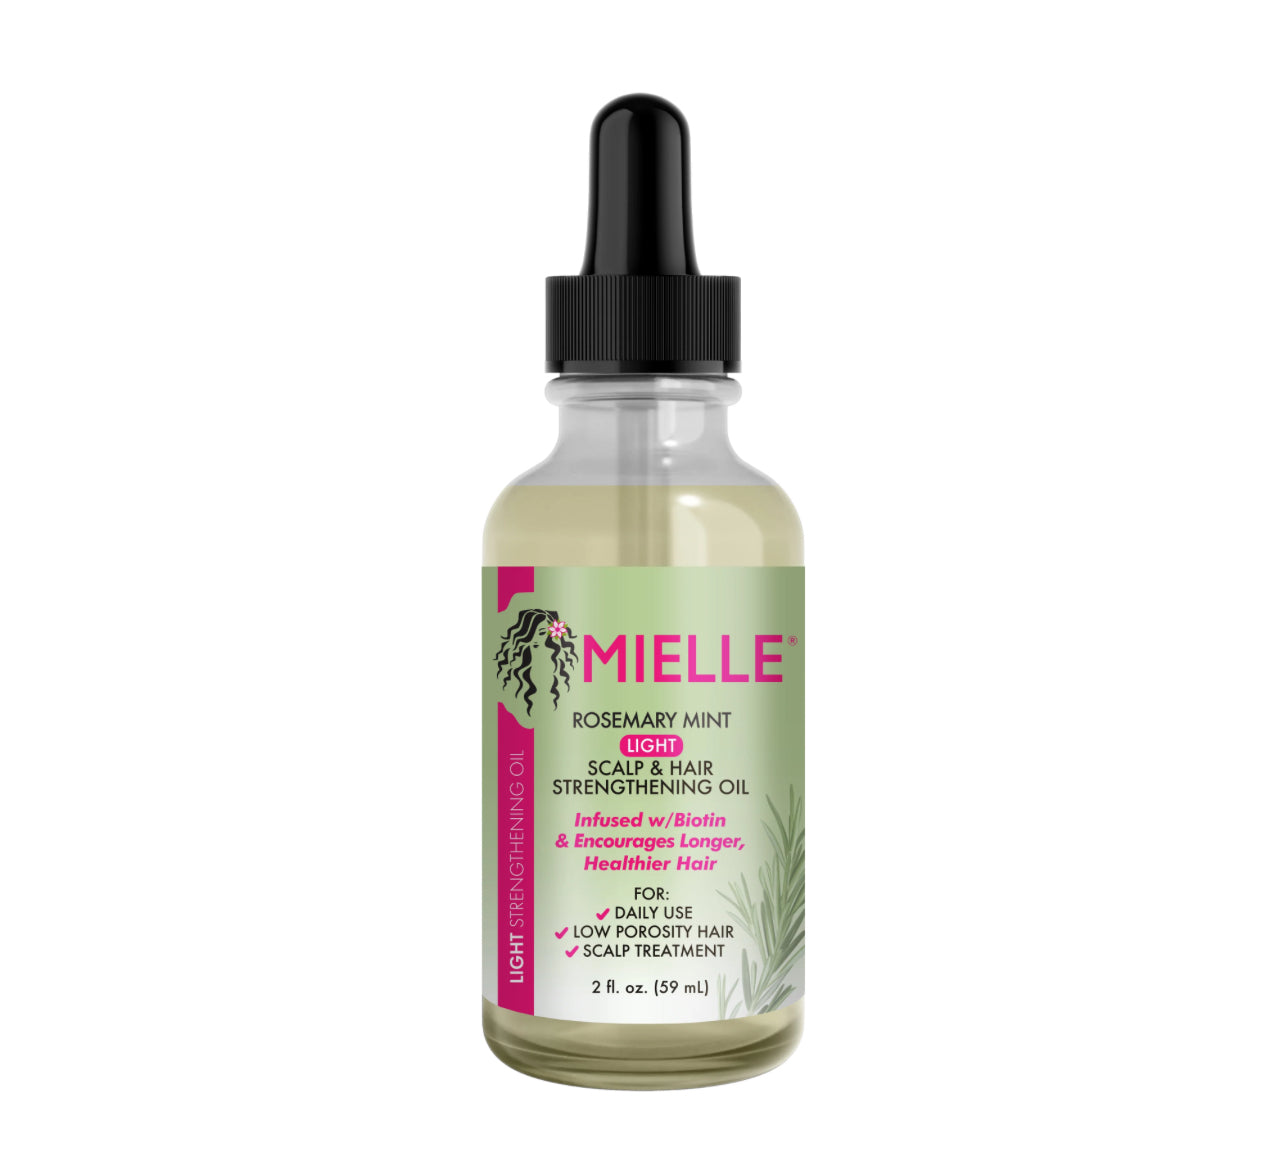 MIELLE Rosemary Mint Light Scalp & Hair strength oil